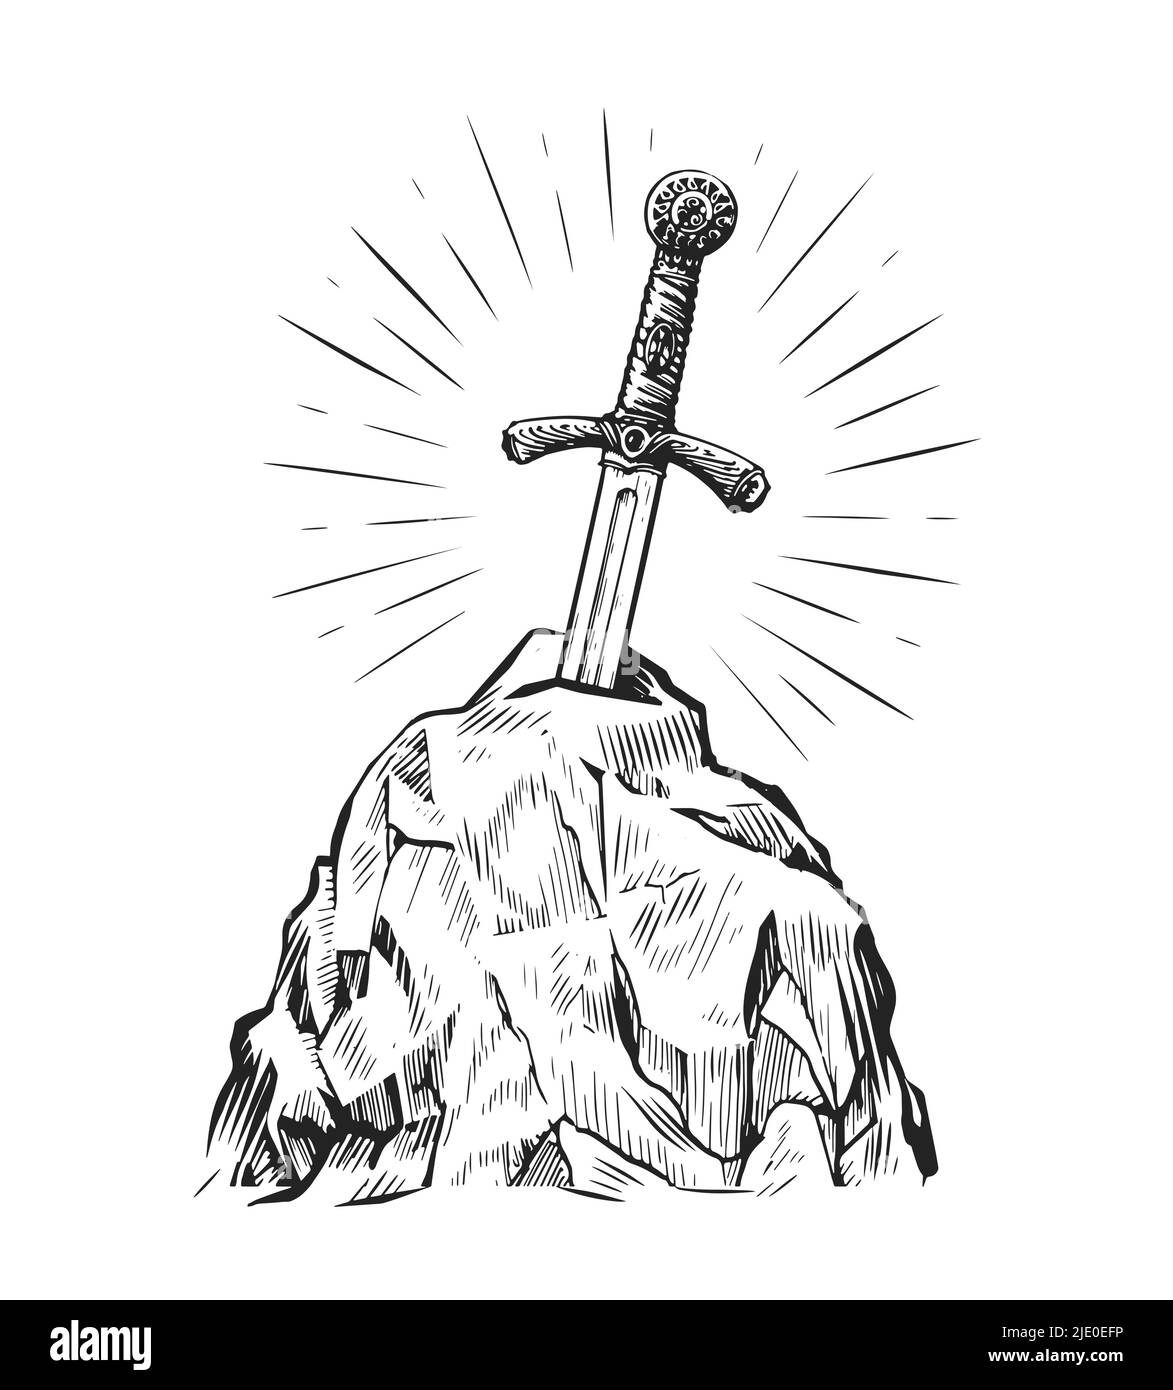 Spada Excalibur nella pietra. Disegno a mano in stile d'incisione vintage. Illustrazione vettoriale Illustrazione Vettoriale